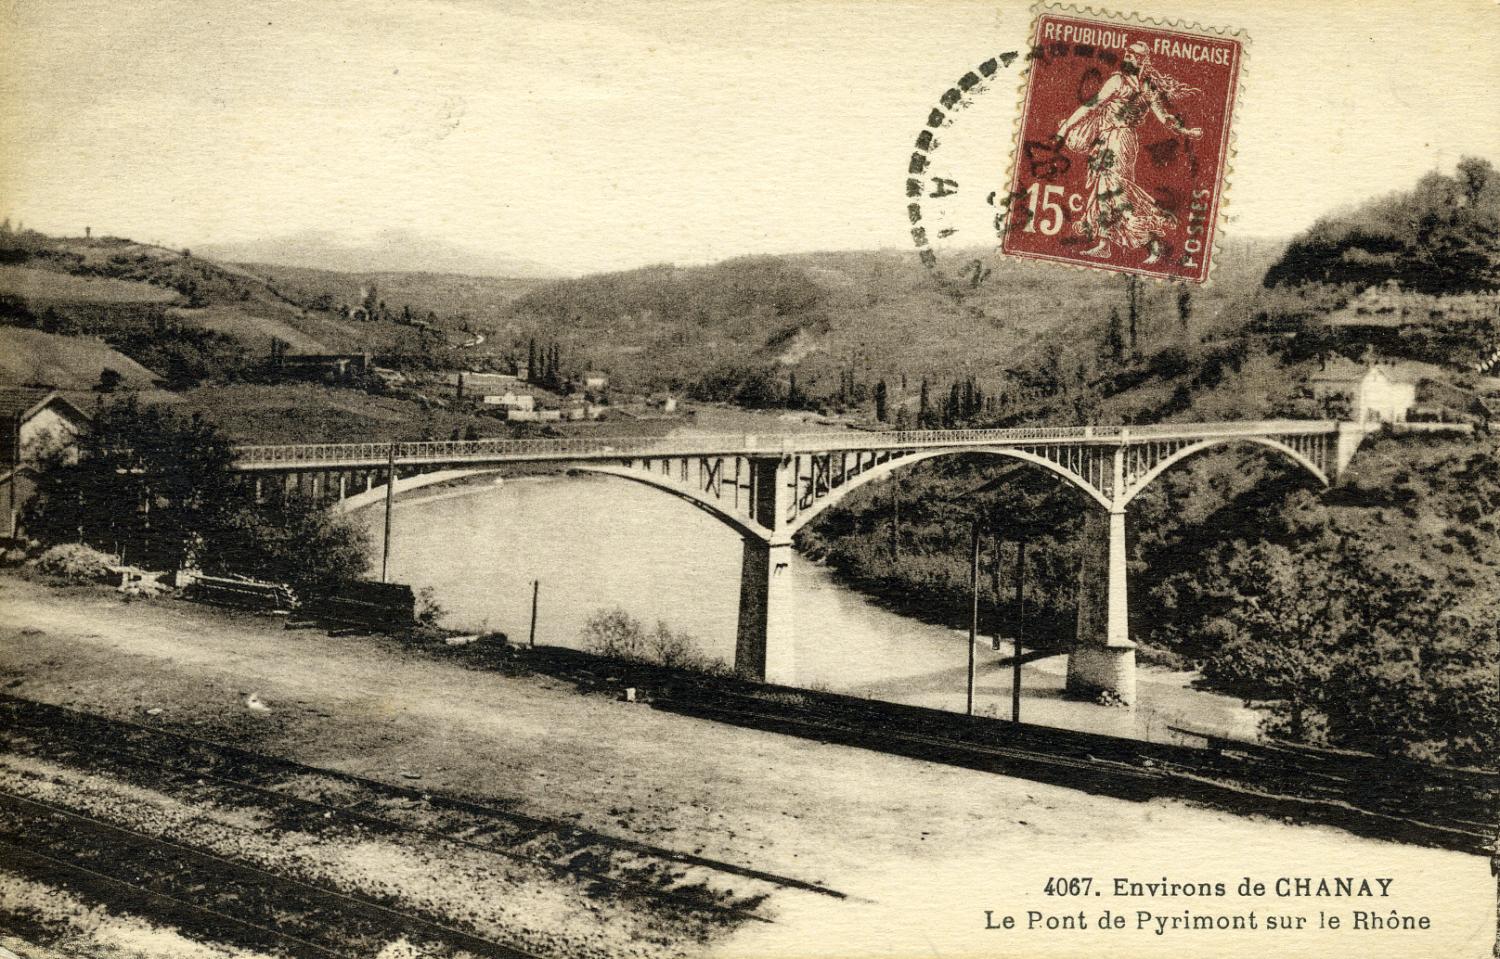 Environs de Chanay - Le Pont de Pyrimont sur le Rhône.